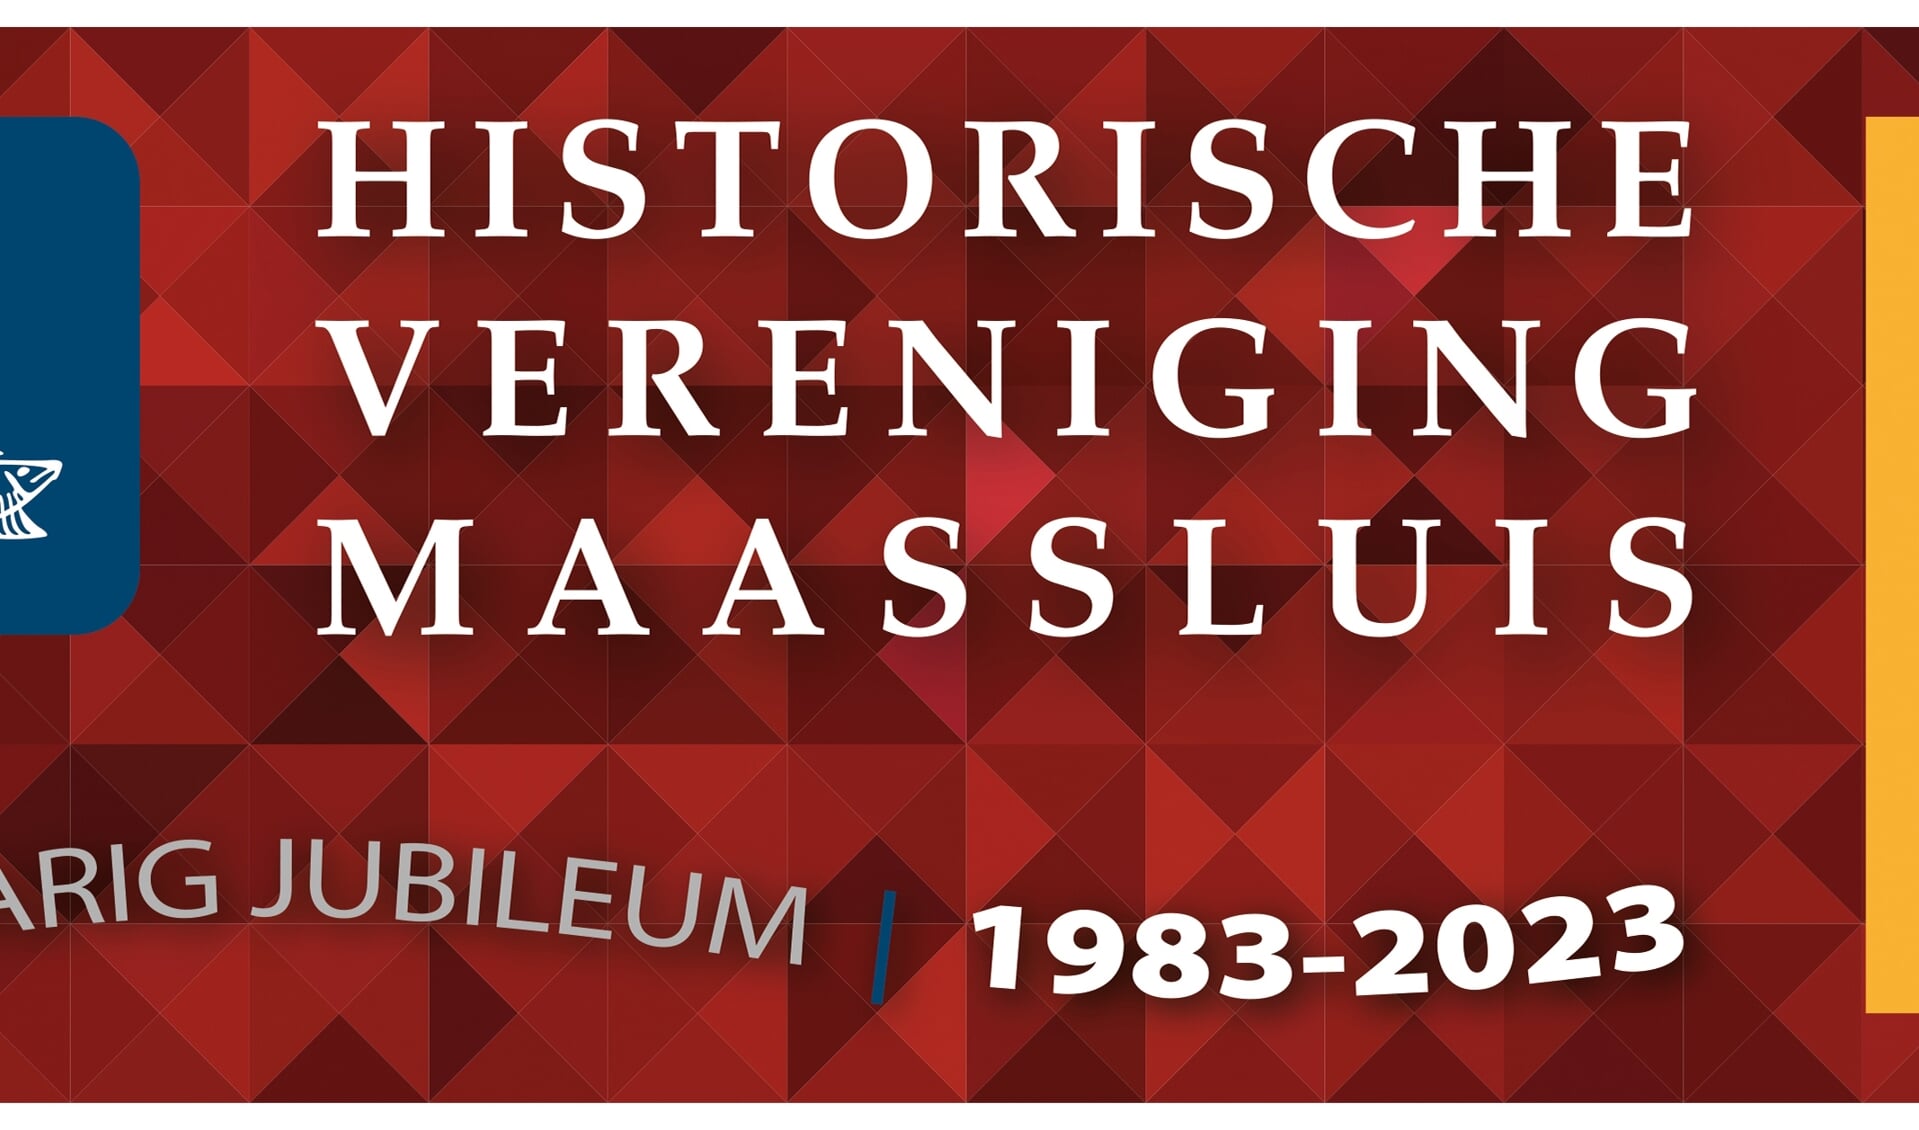 Op donderdagavond 20 april 2023 zal de Historische Vereniging Maassluis (HVM) haar algemene ledenvergadering houden.